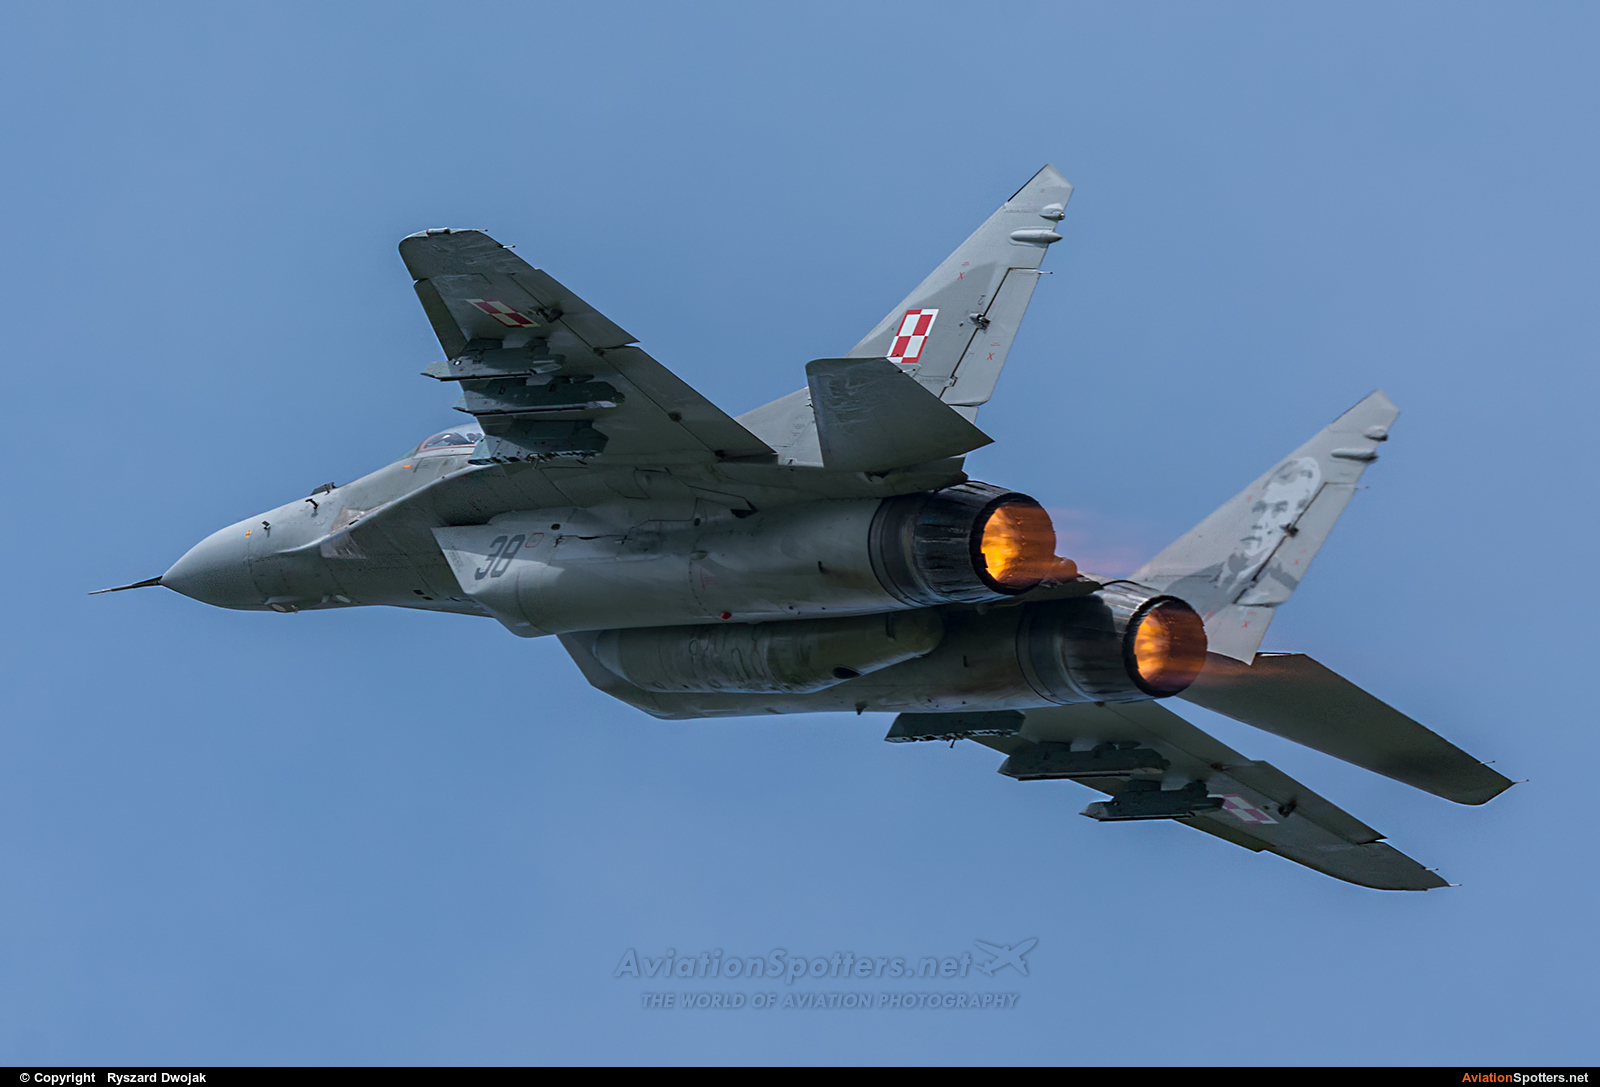 Poland - Air Force  -  MiG-29  (38) By Ryszard Dwojak (ryś)